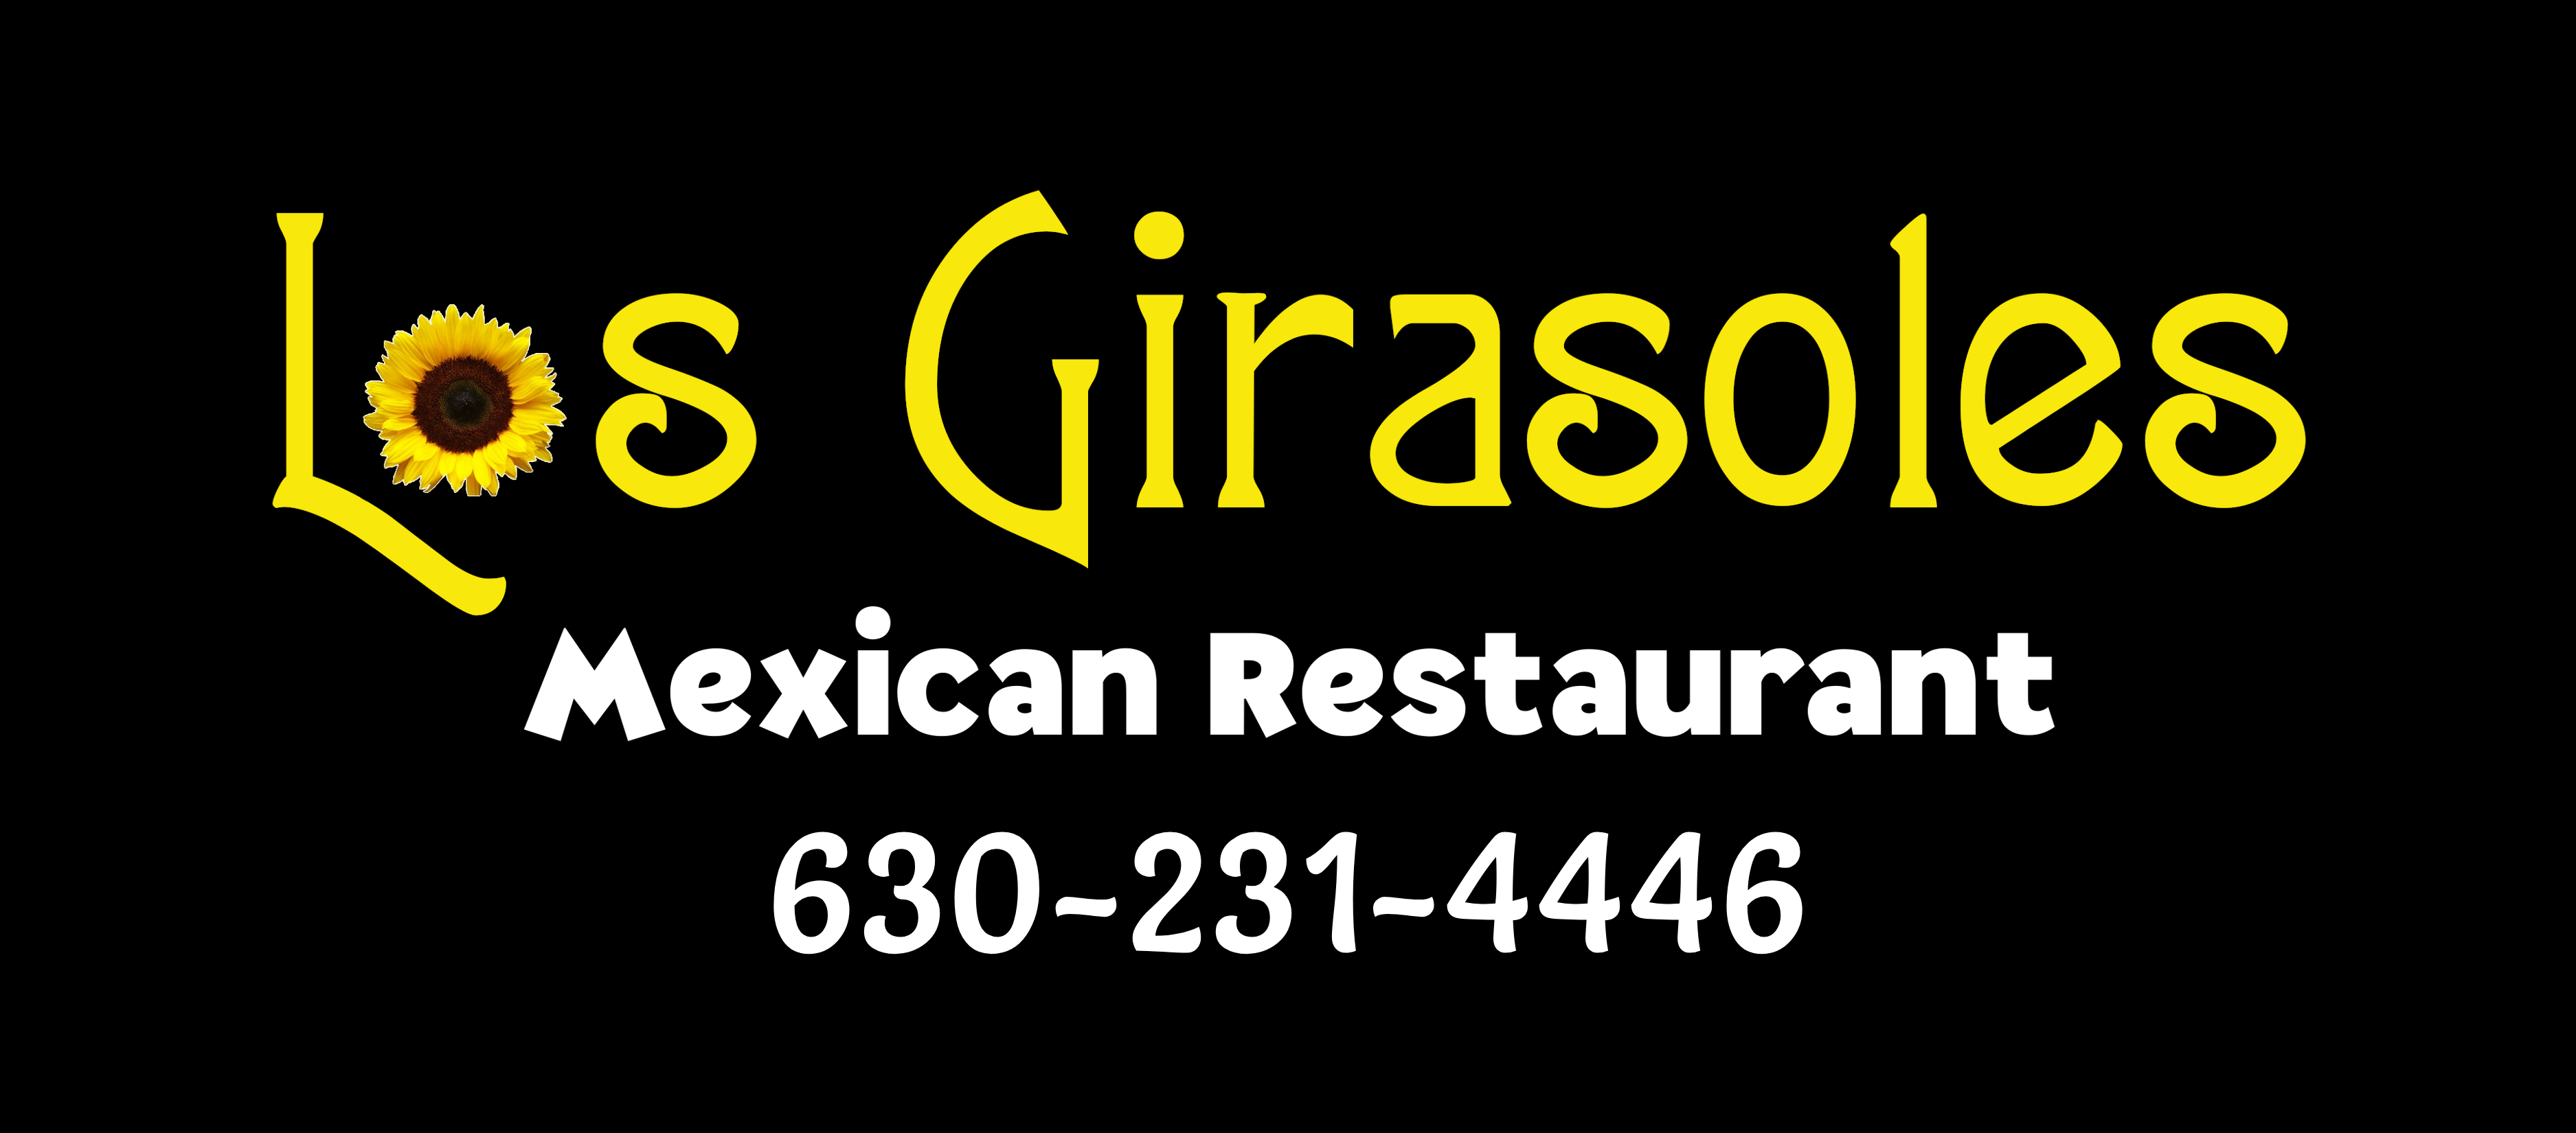 Los Girasoles Mexican Restaurant